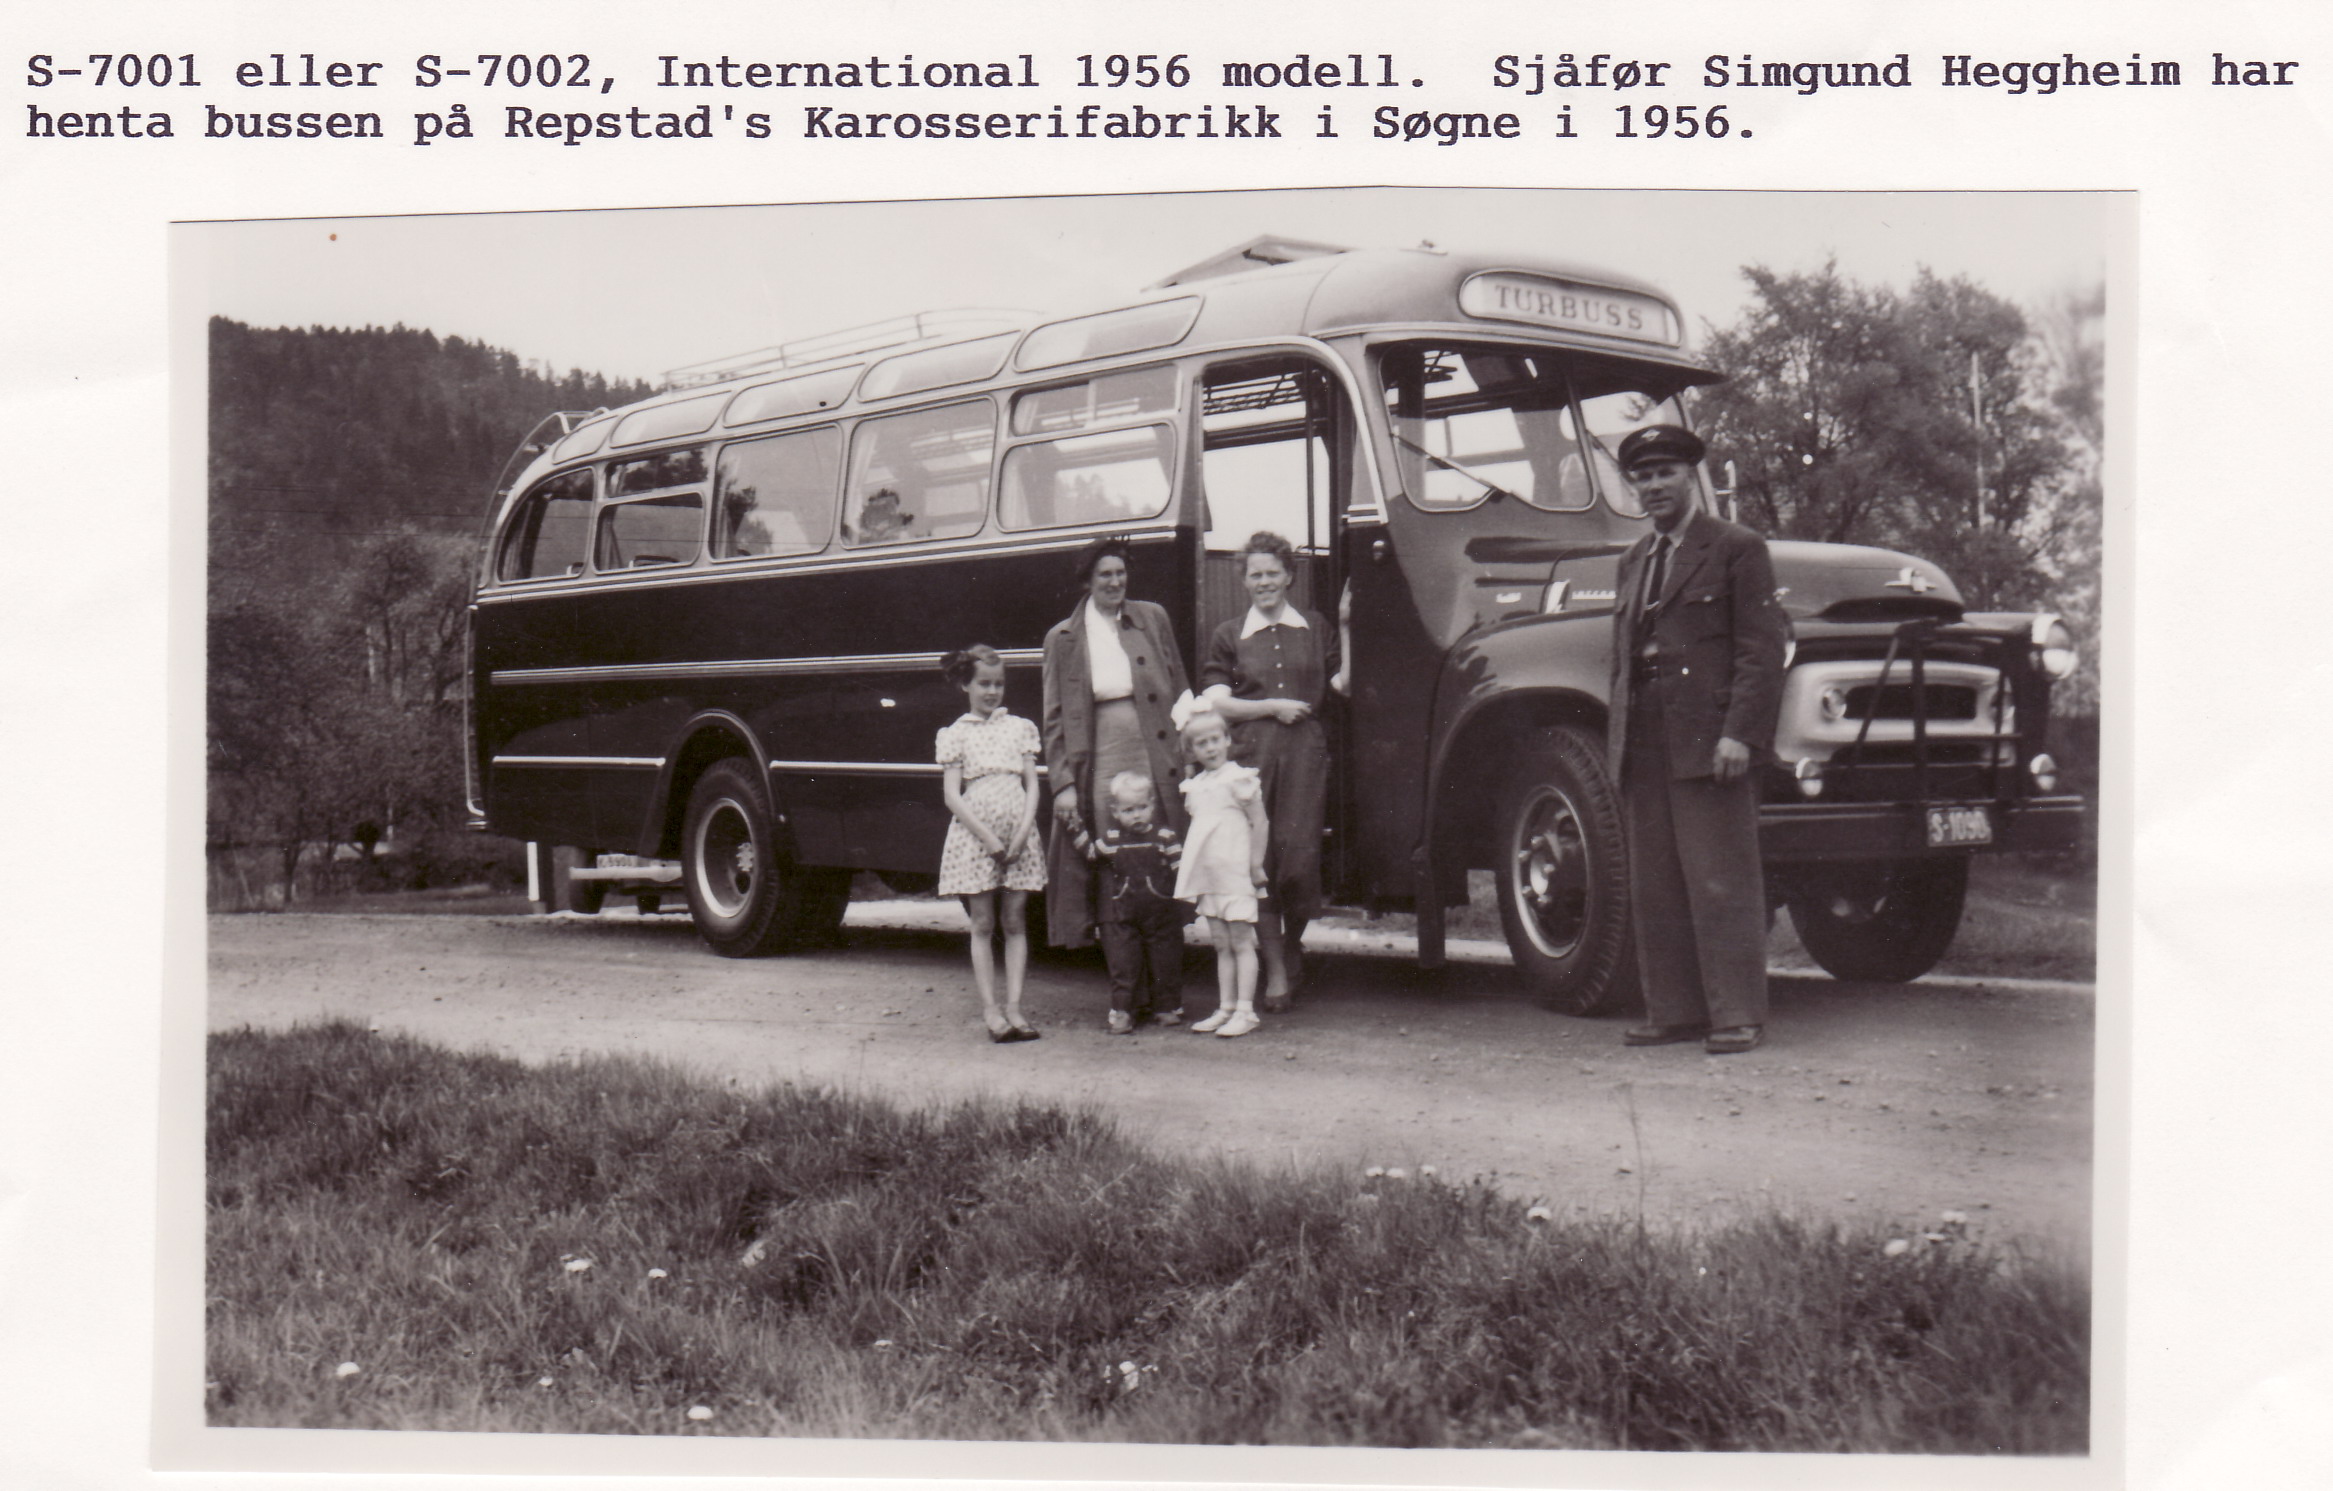 S-7002 International - ny 1956